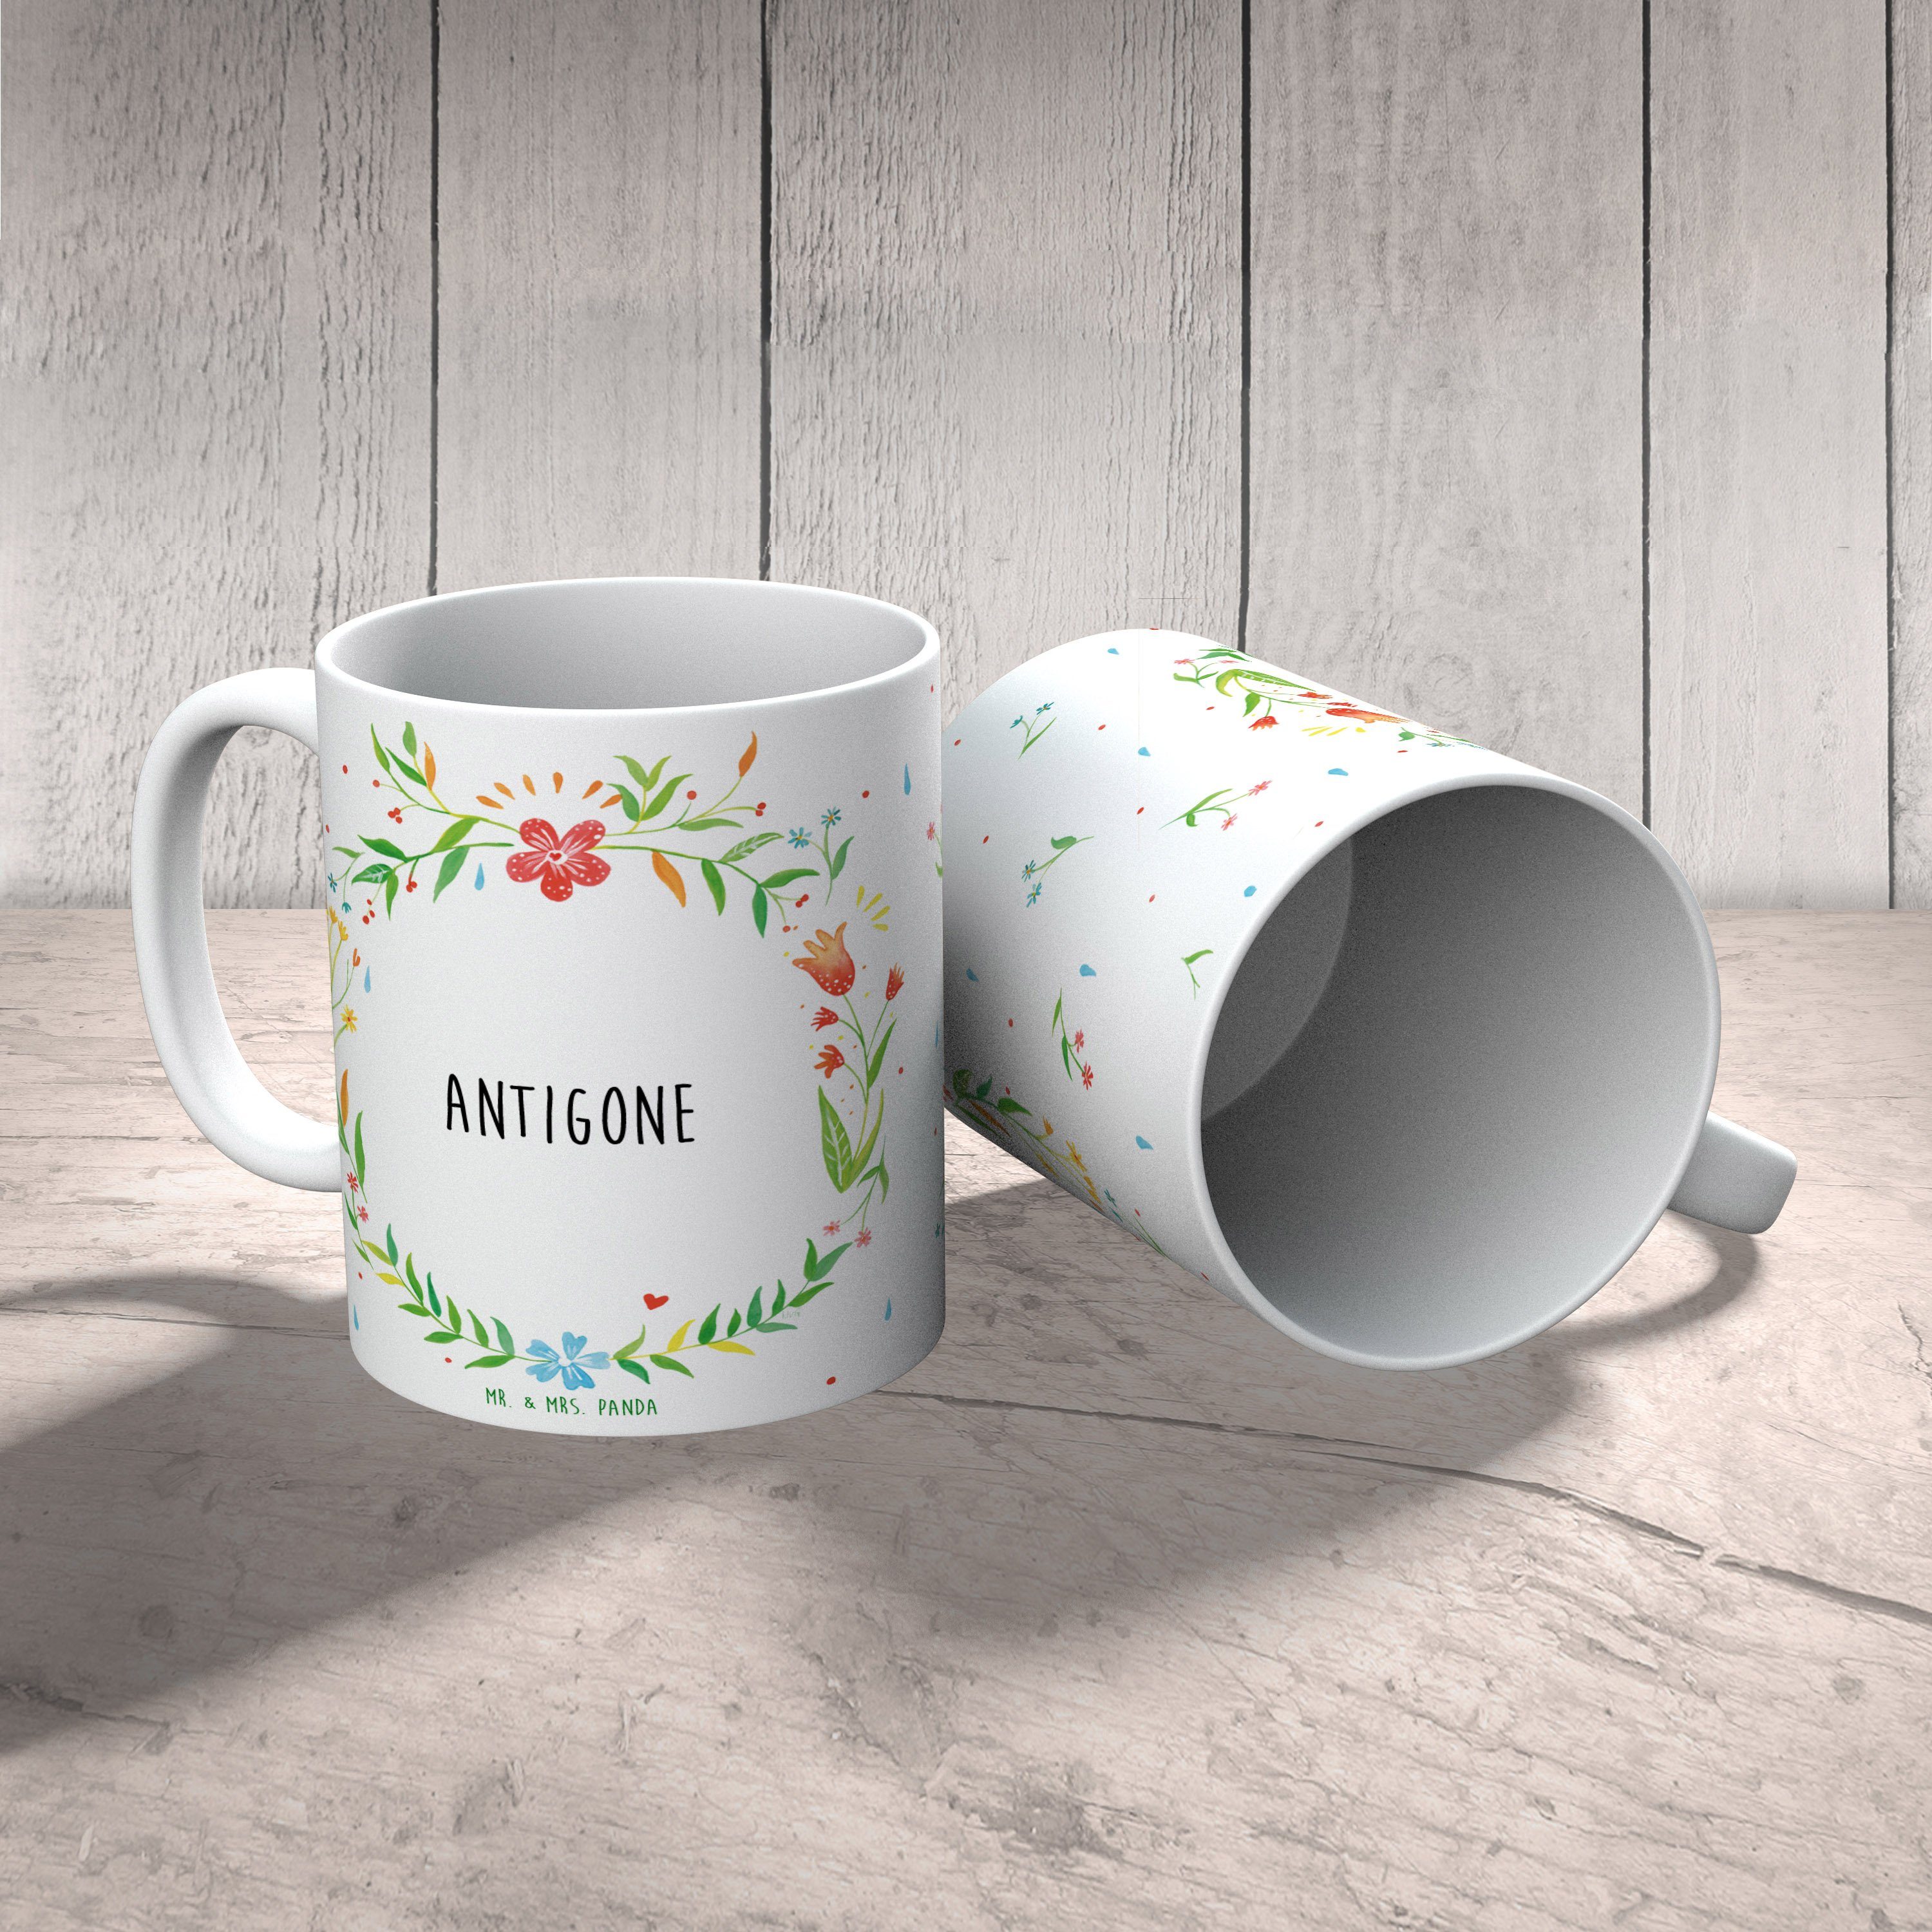 Kaffeetasse, Geschenk Mr. Panda Keramik Tasse, Mrs. & Kaffeebecher, Antigone Tasse Büro, Geschenk, -